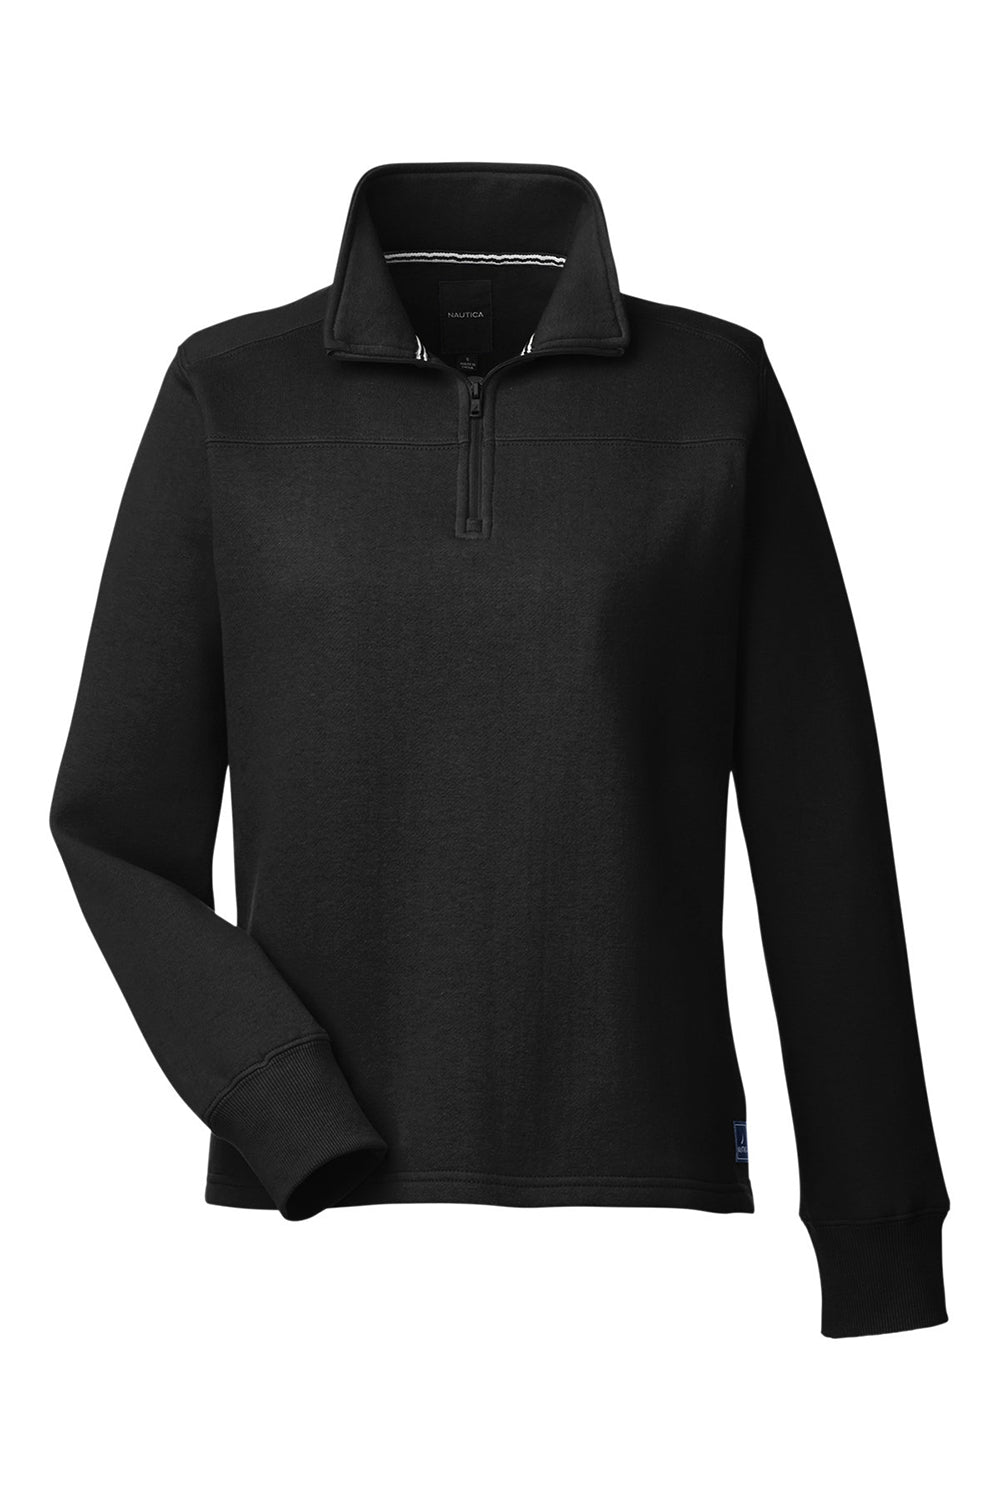 Nautica N17397 Womens Anchor Fleece 1/4 Zip Sweatshirt Black Flat Front